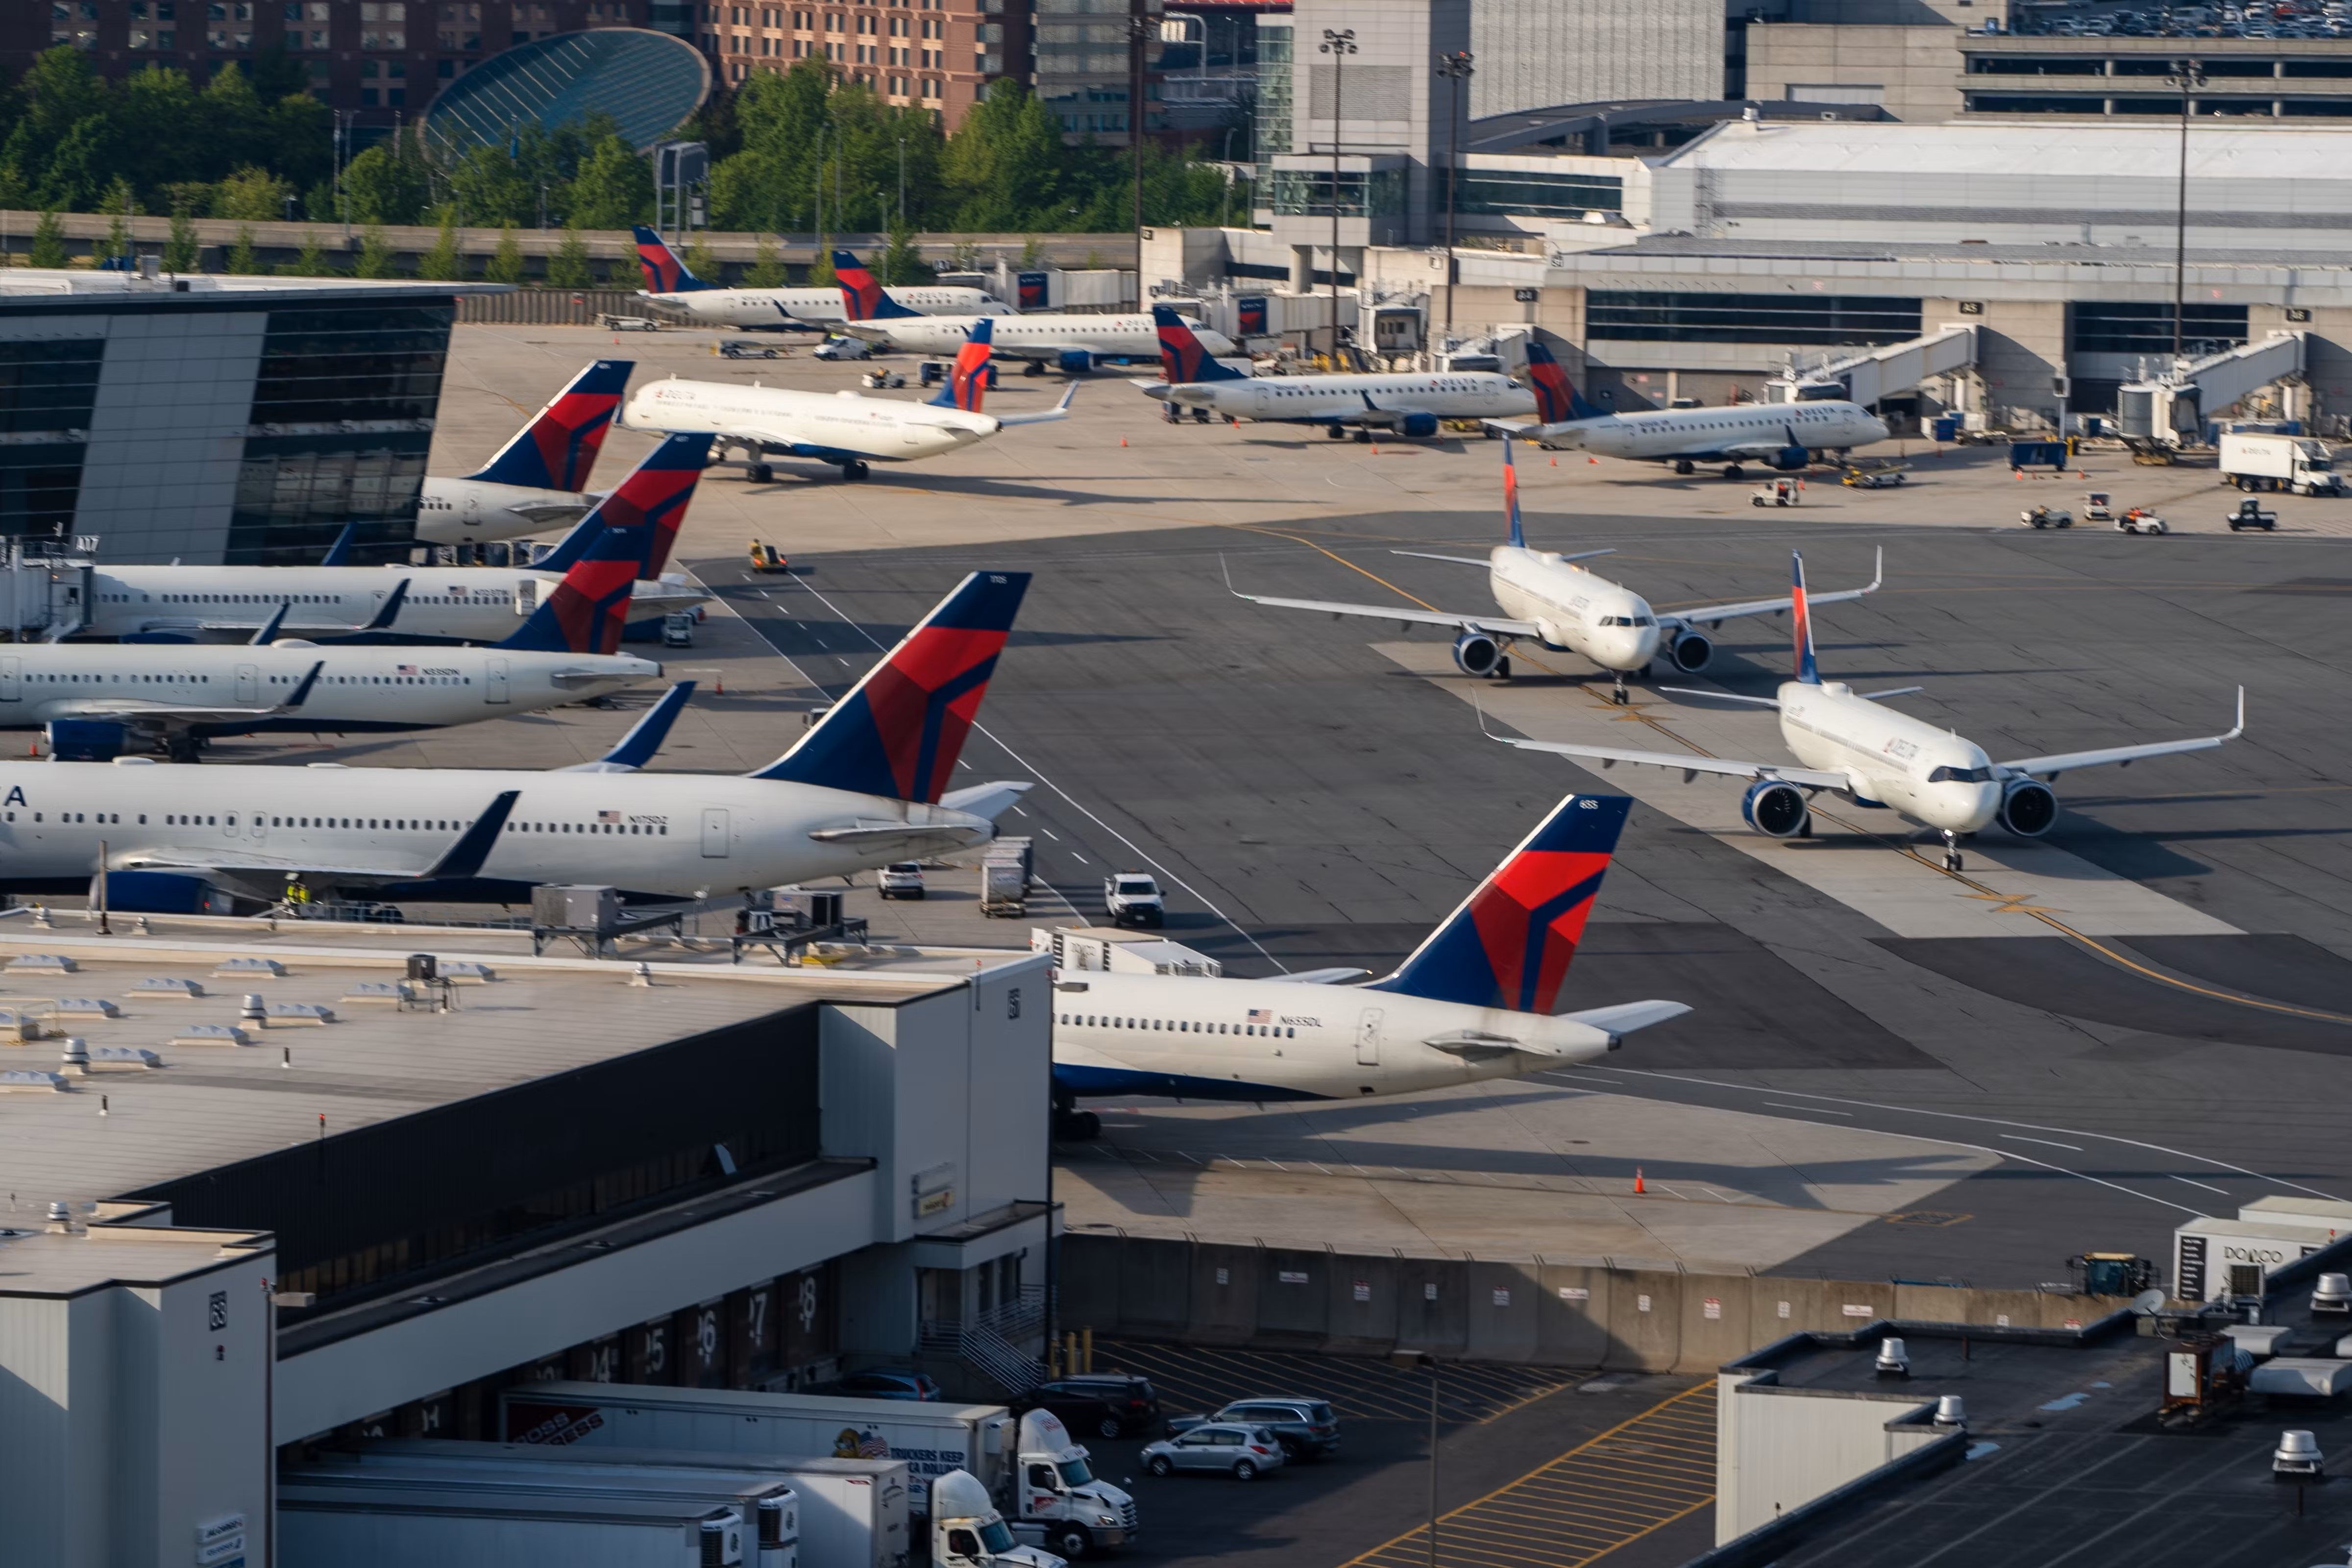 Several Delta Air Lines aircraft on the apron at Boston Logan Airport.